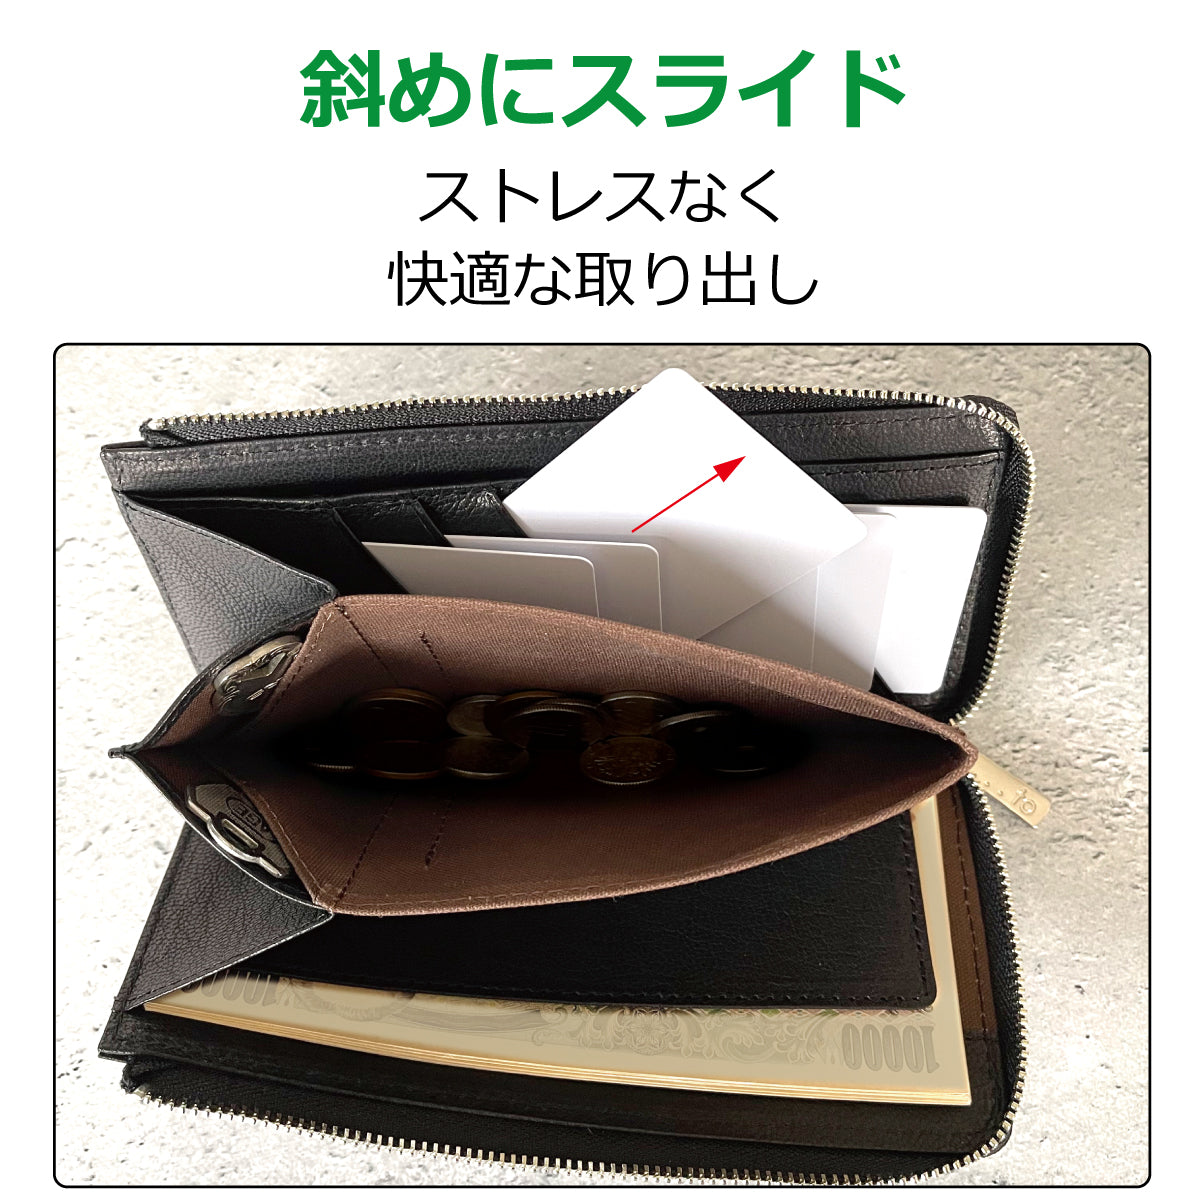 【...to®・Sole_zip】使うほどに手に馴染む、整理ができる圧倒的に薄く小さな長財布